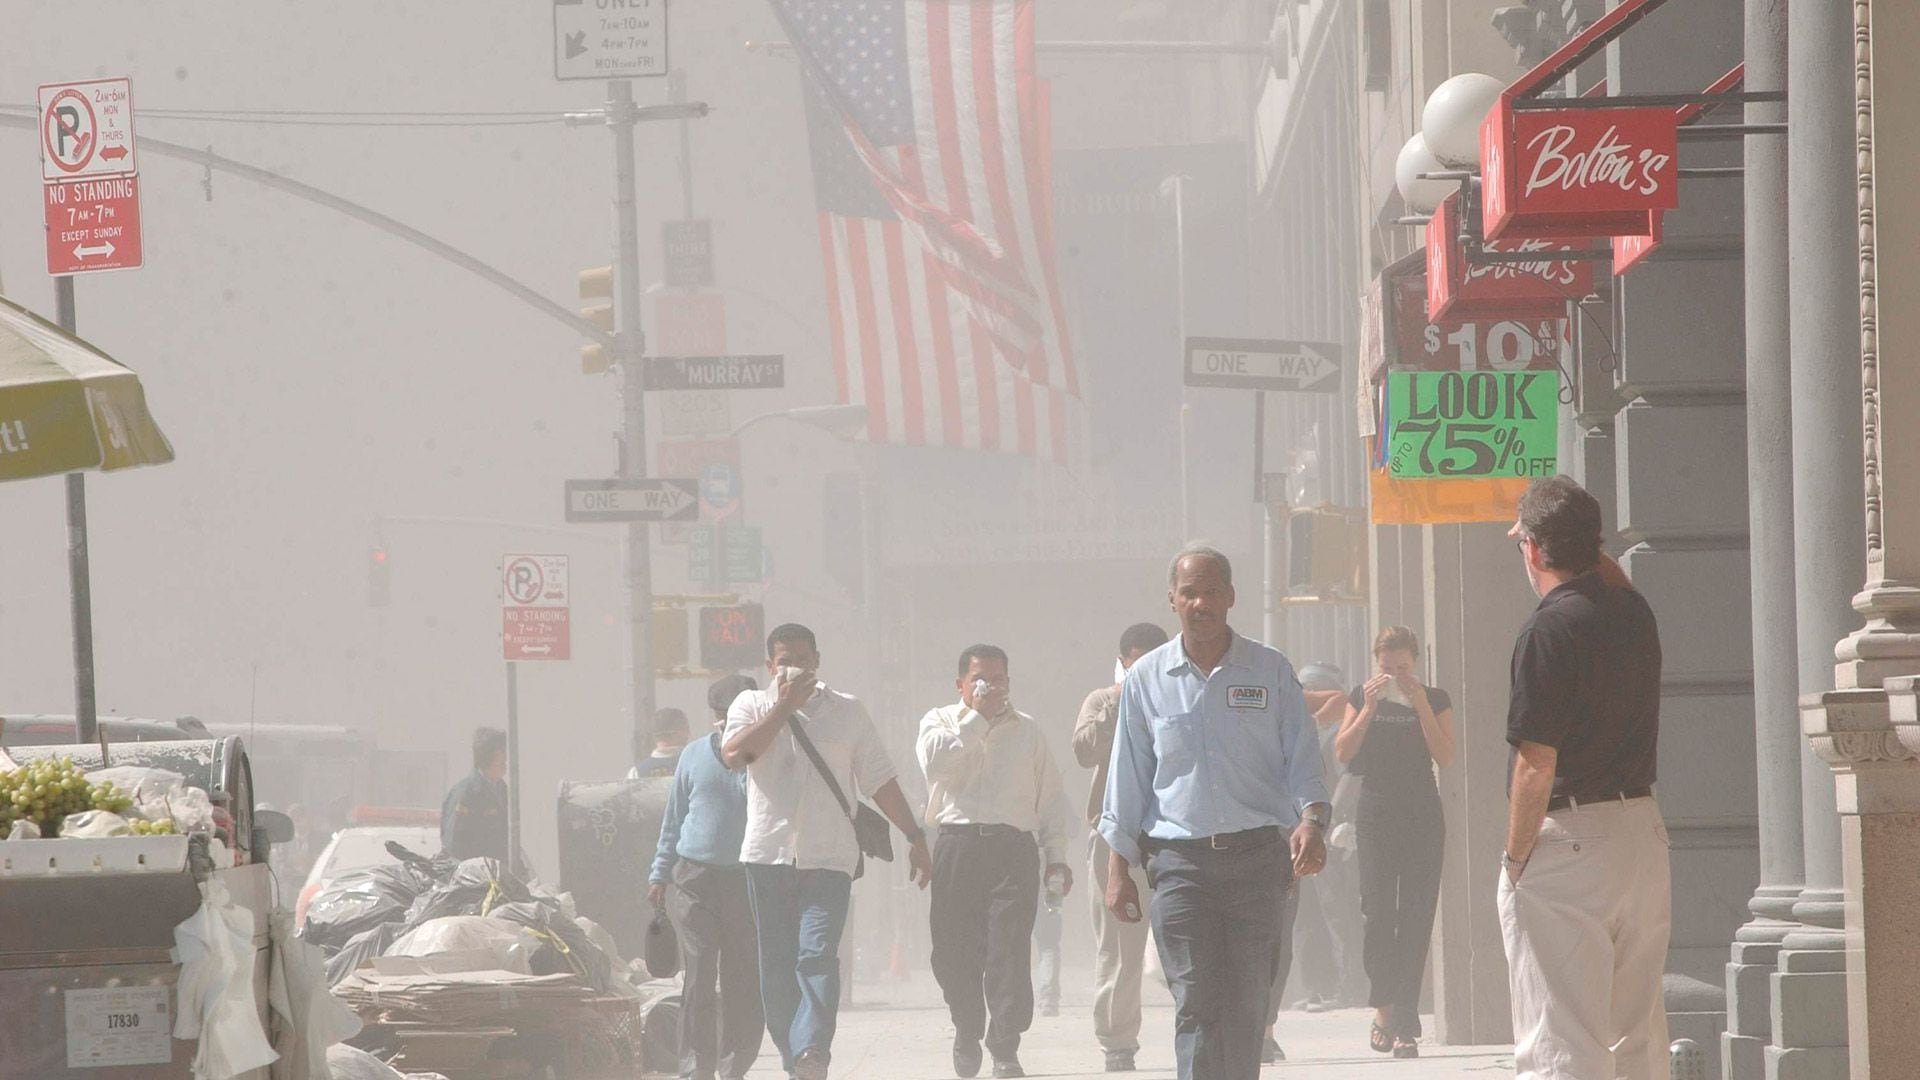 La gente huye cubierta de polvo luego del colapso de la primera torre. (Foto: Spencer Platt/Getty Images)